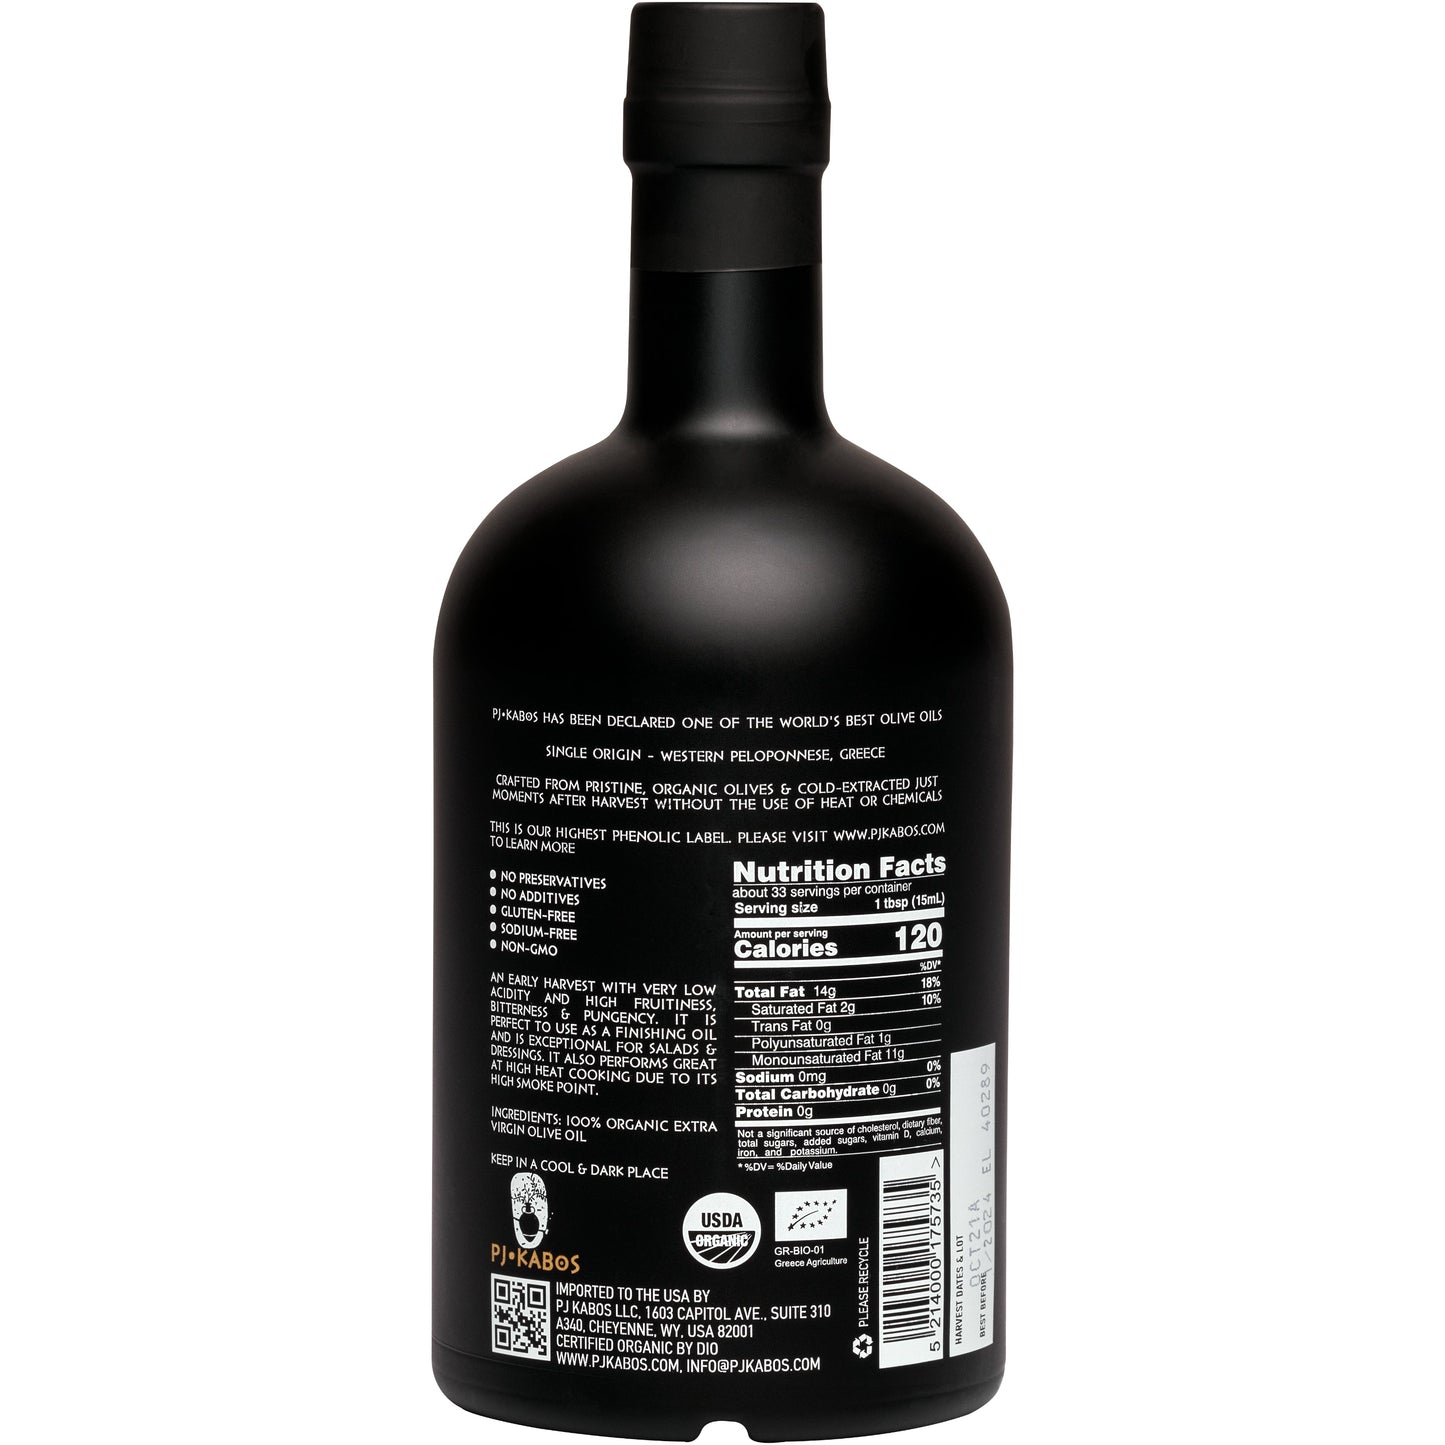 'Family Reserve Organic - Robust' Extra Virgin Olive Oil 16.9floz Bottle